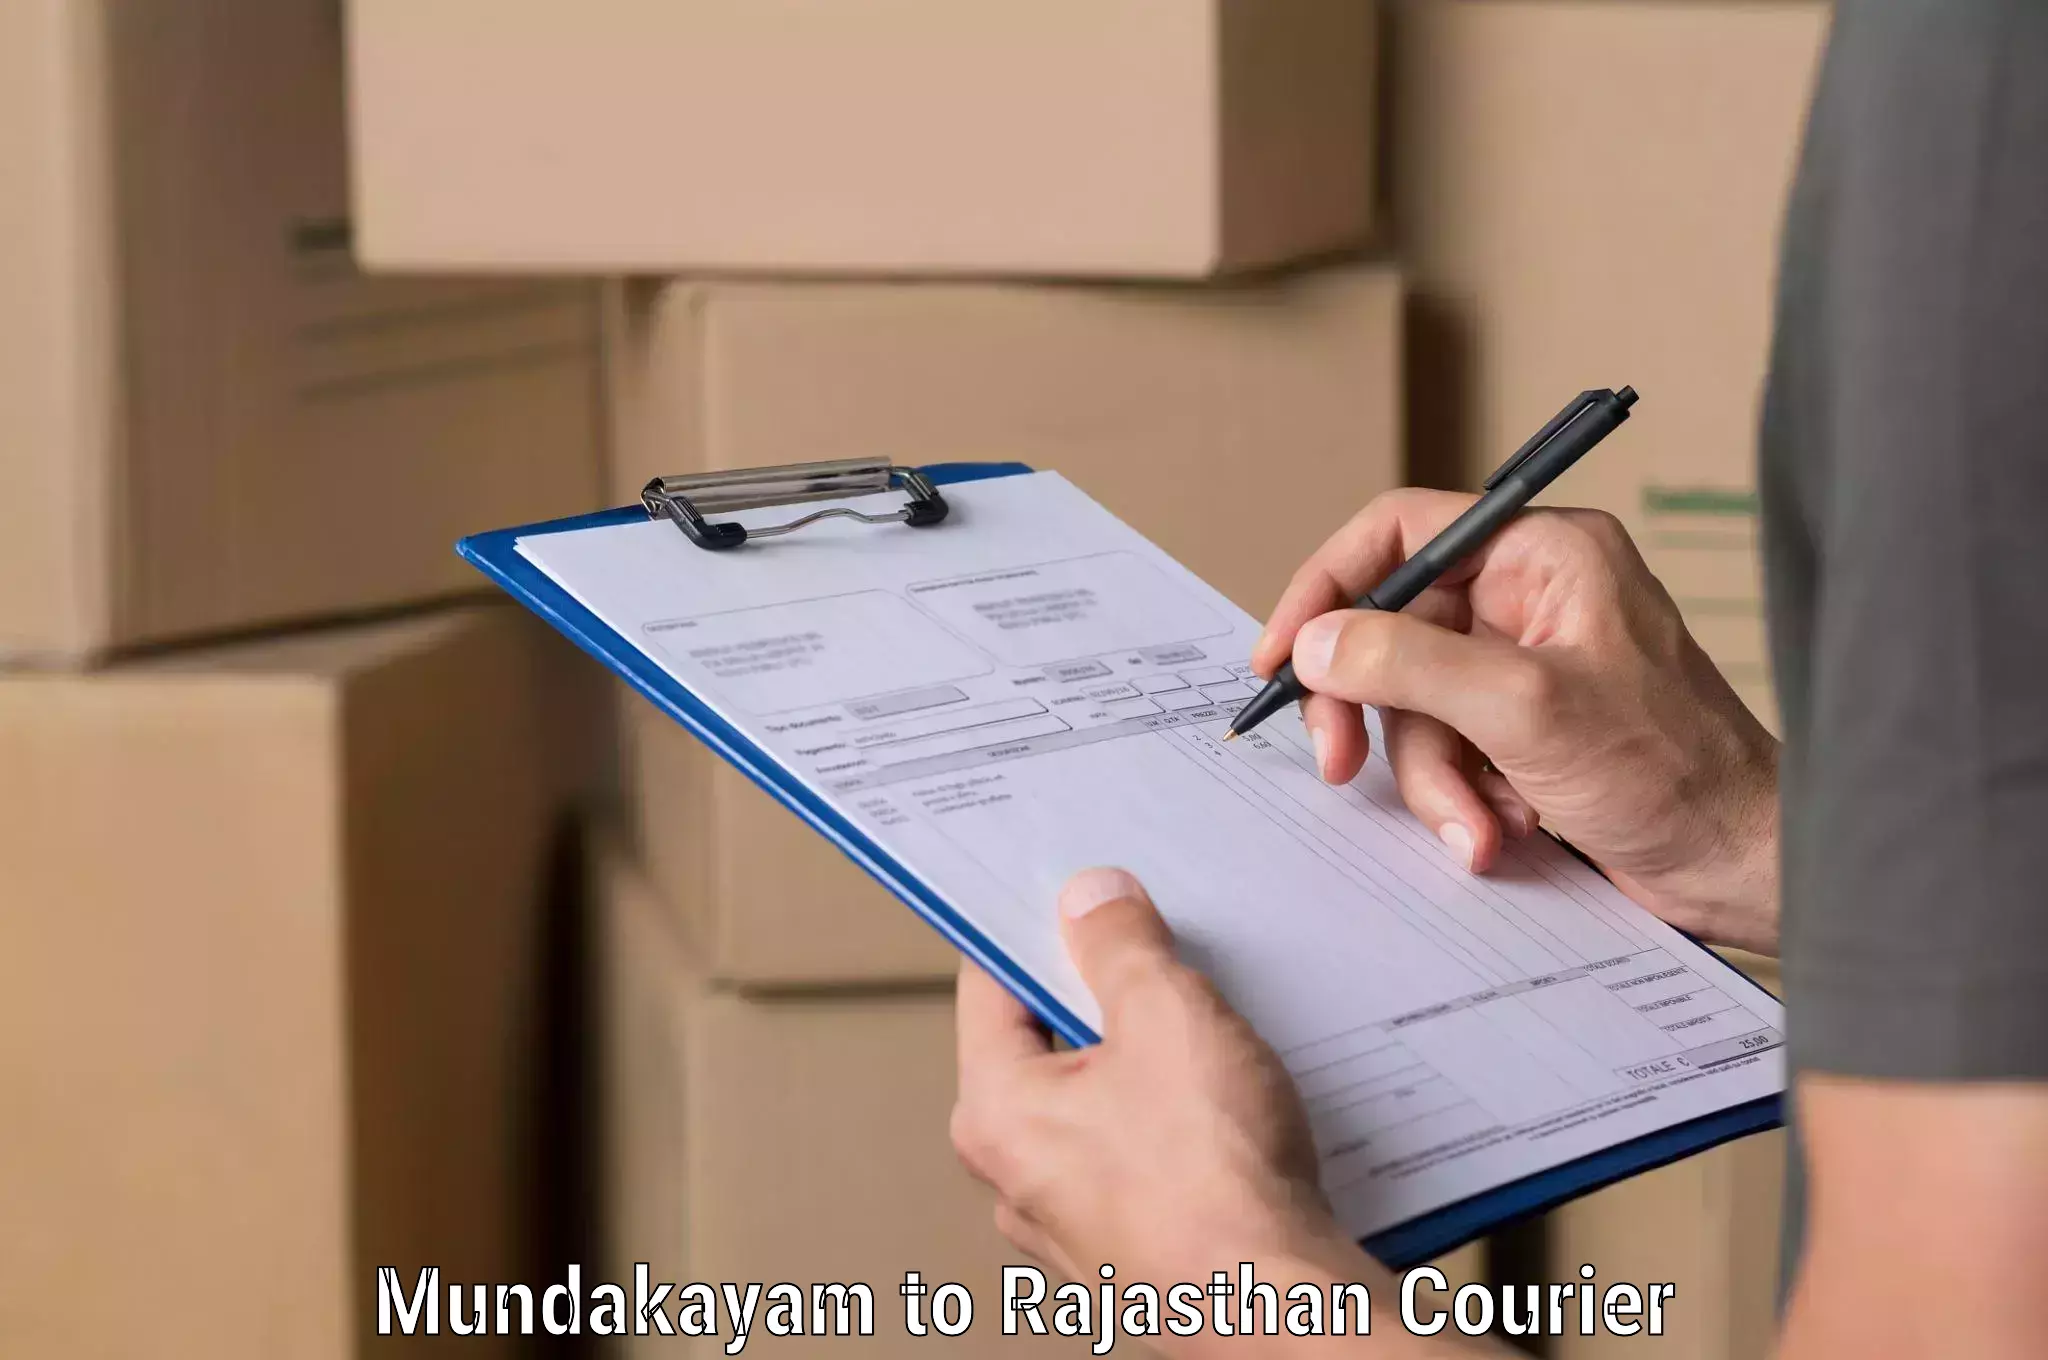 Digital courier platforms Mundakayam to Rajasthan